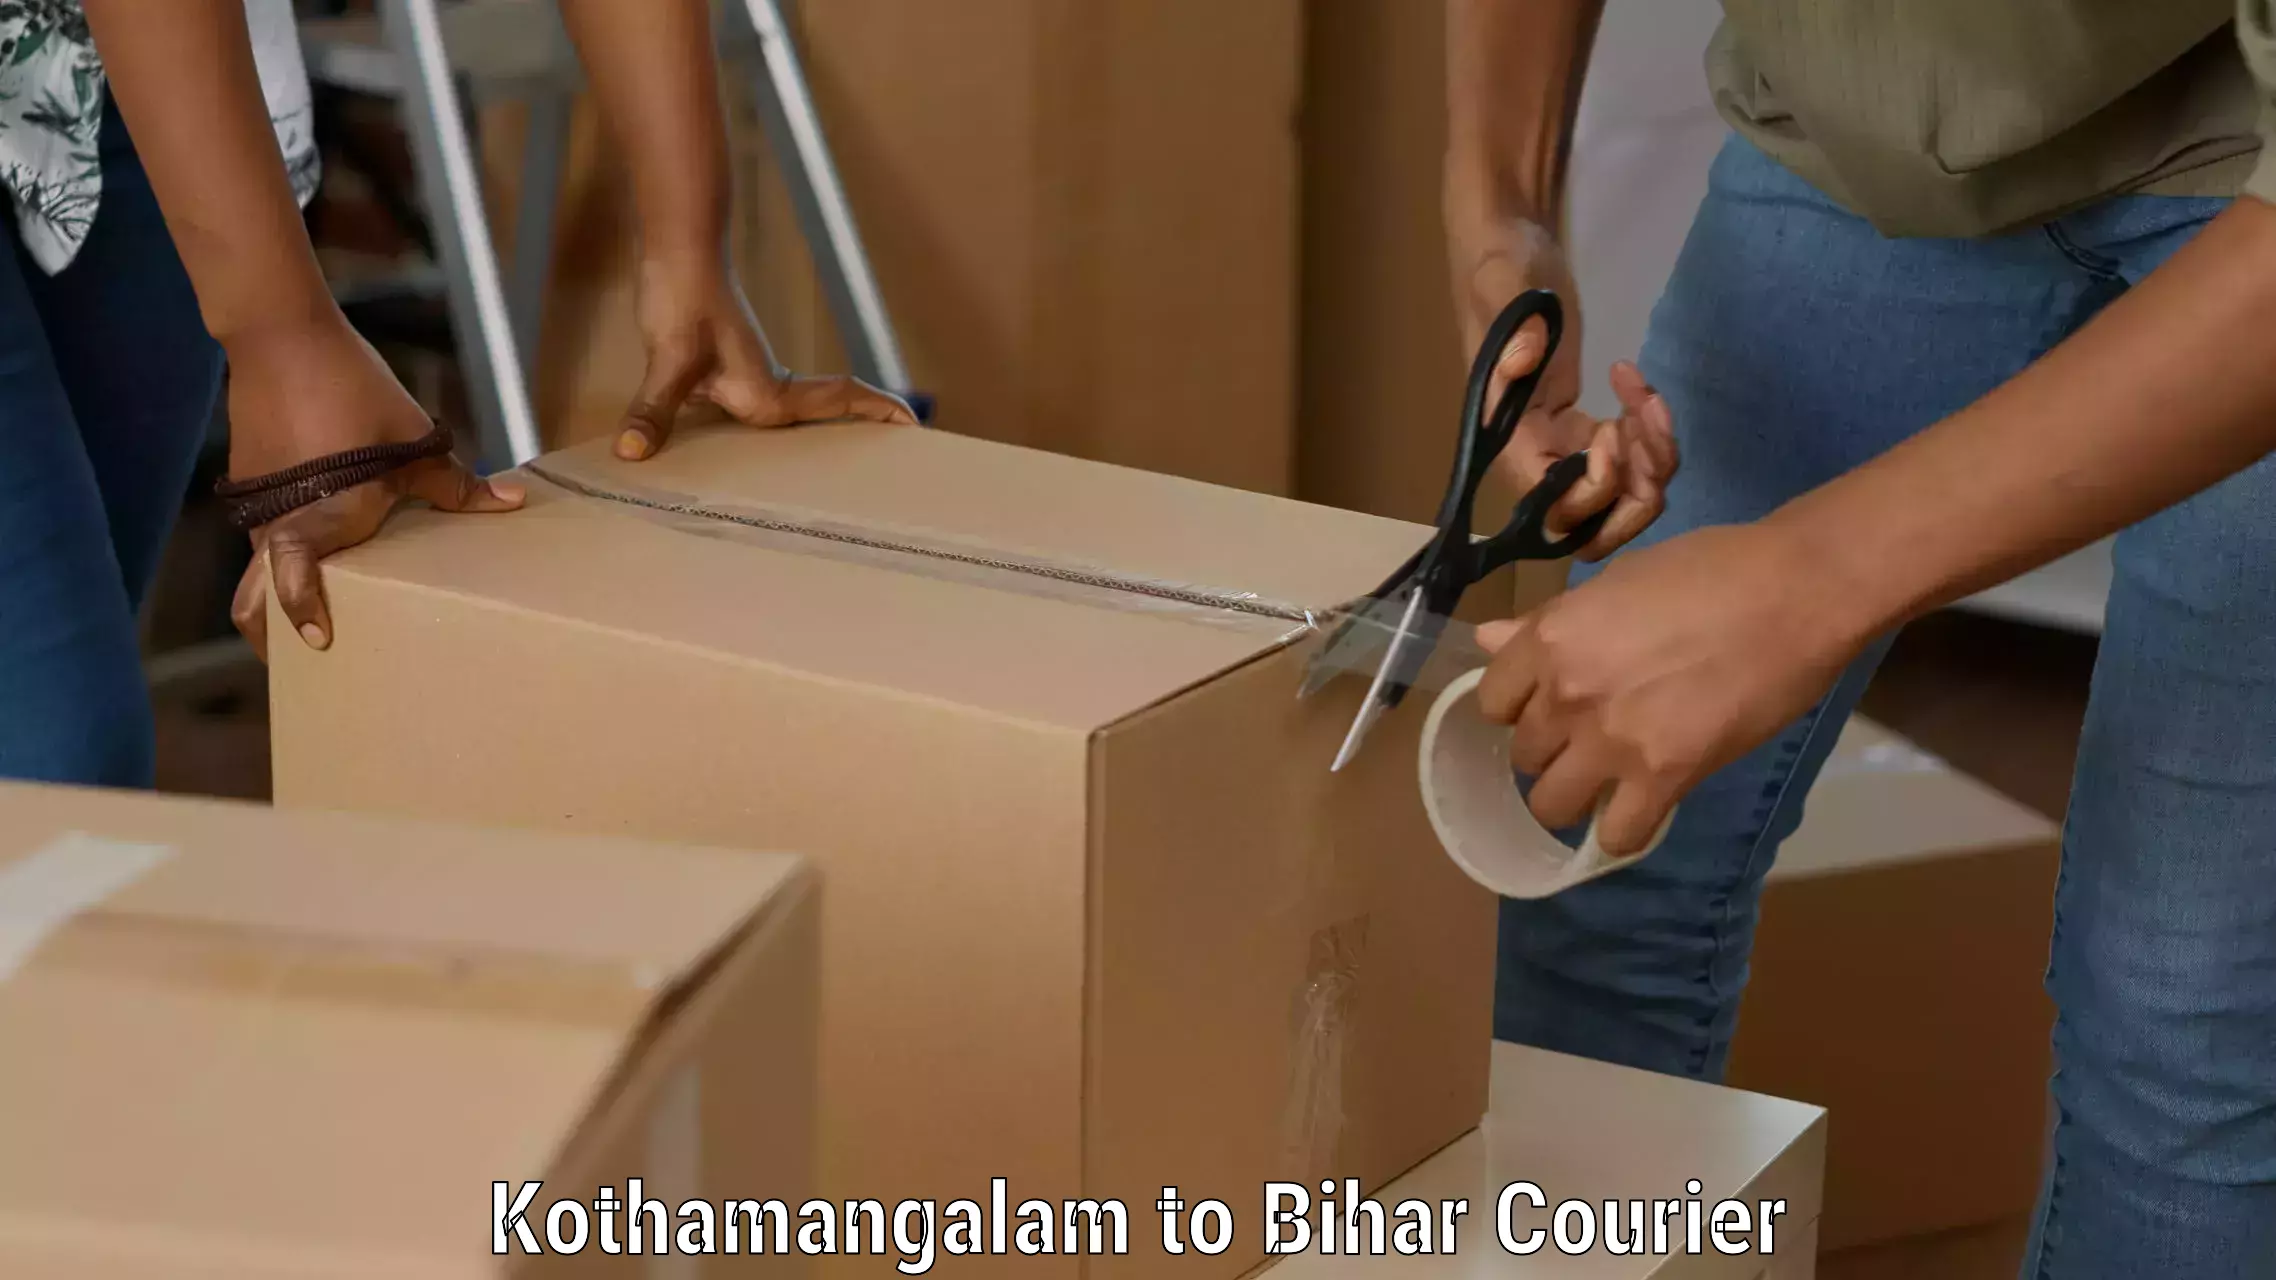 On-call courier service Kothamangalam to Sugauli